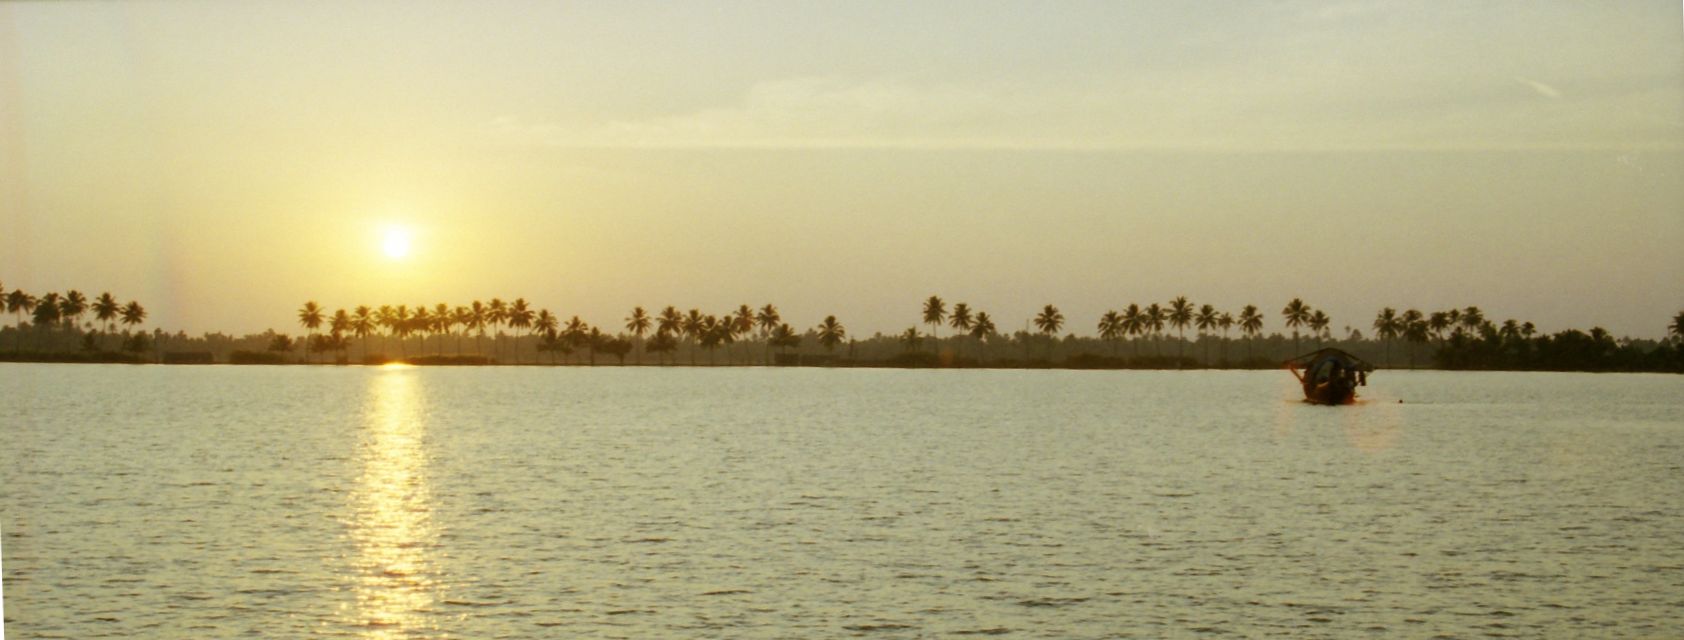 20000200-India-Kerala-Backwaters-sunset-AU301-27tr-pan.jpg